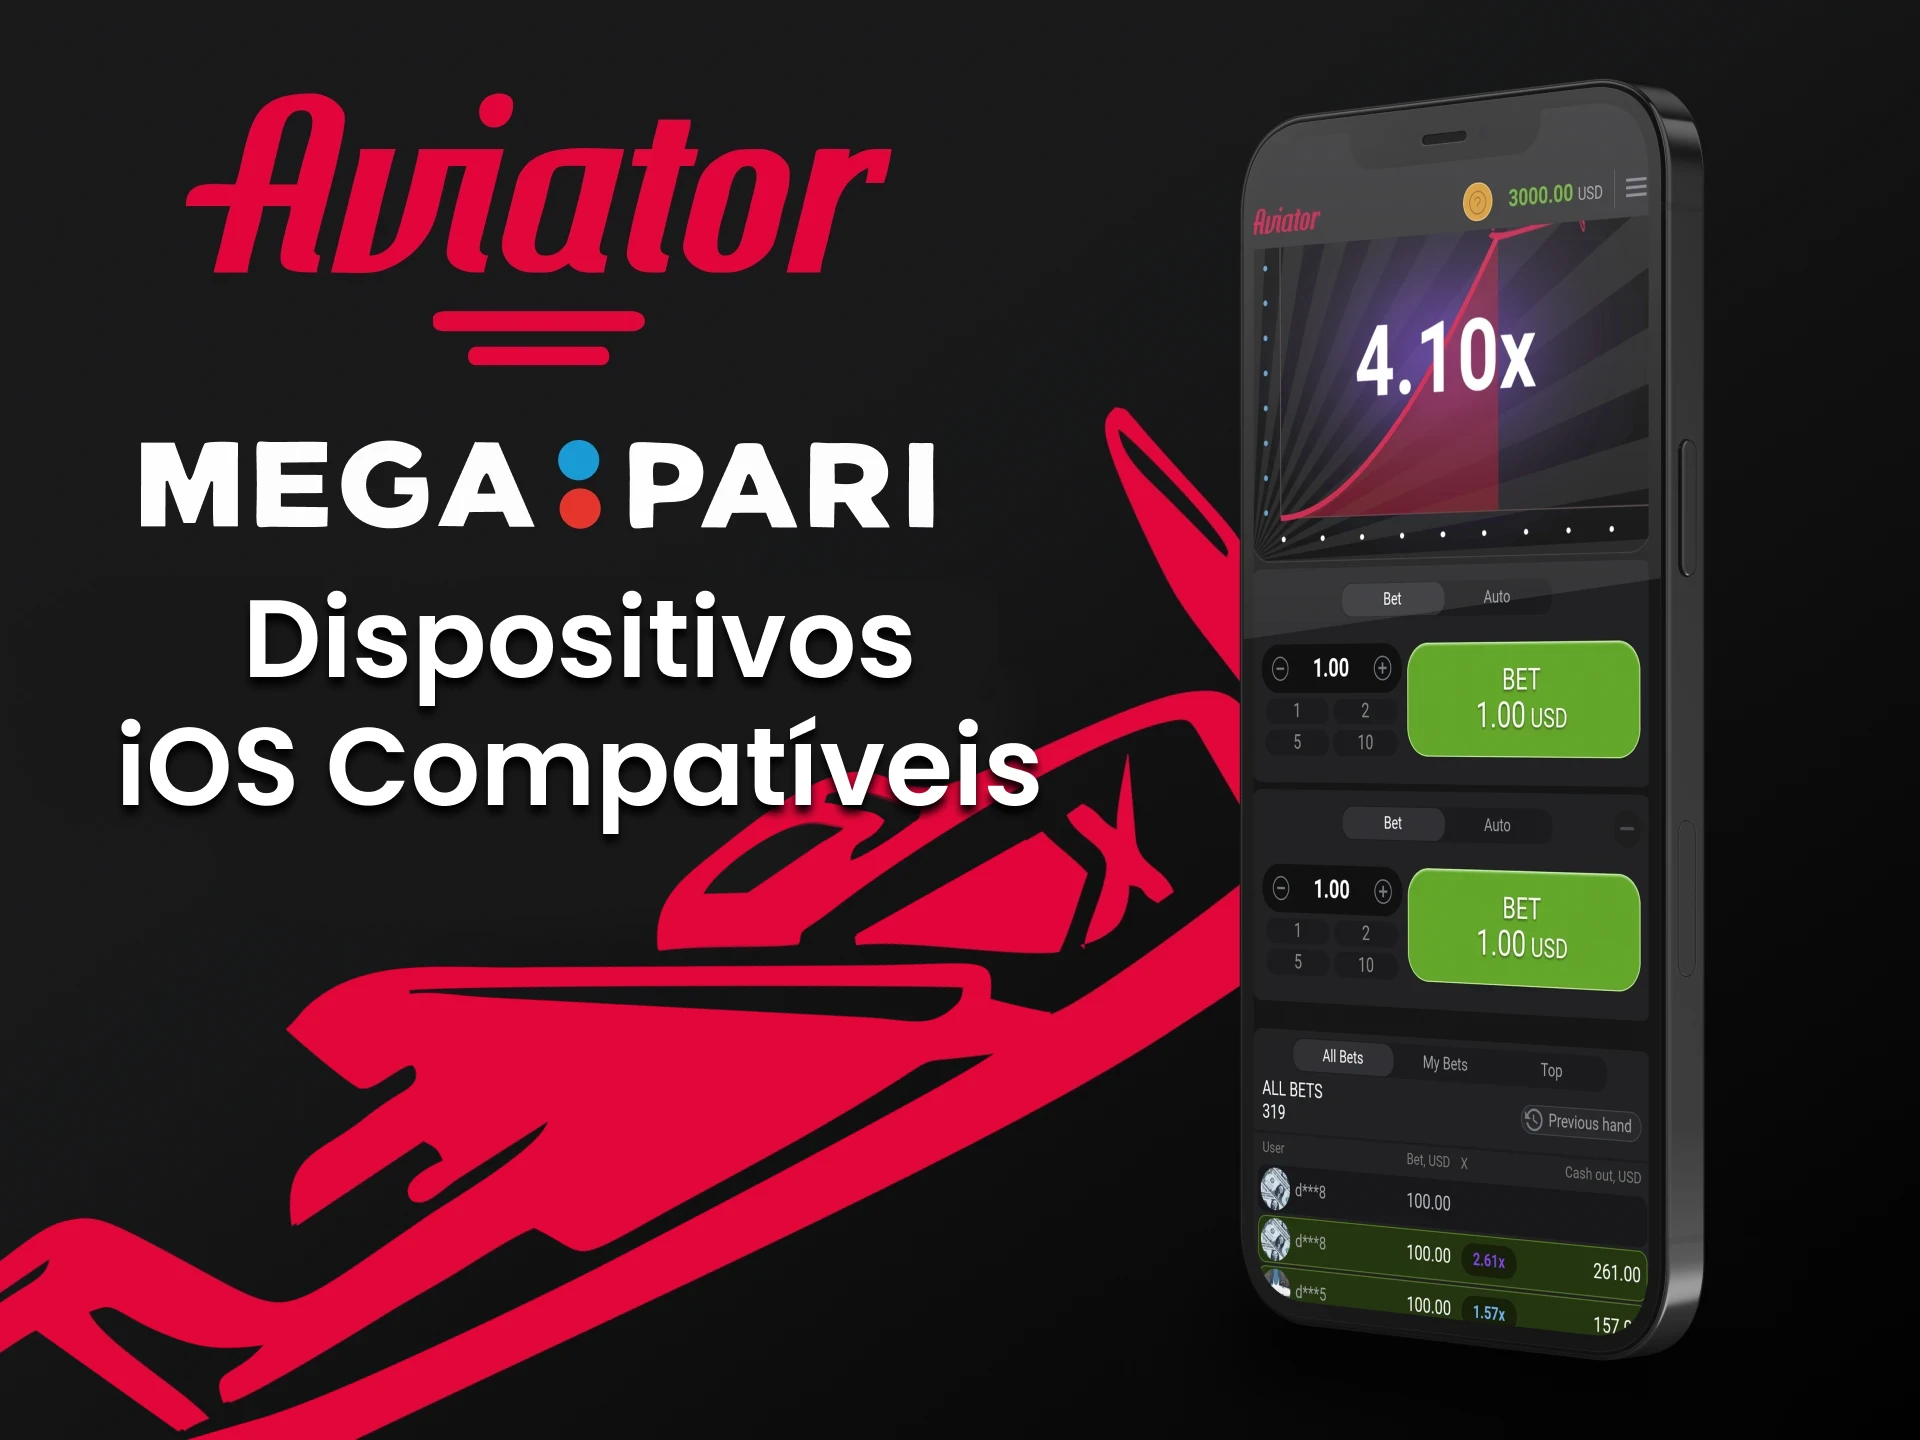 Para jogar Aviator, use o aplicativo Megapari para iOS.